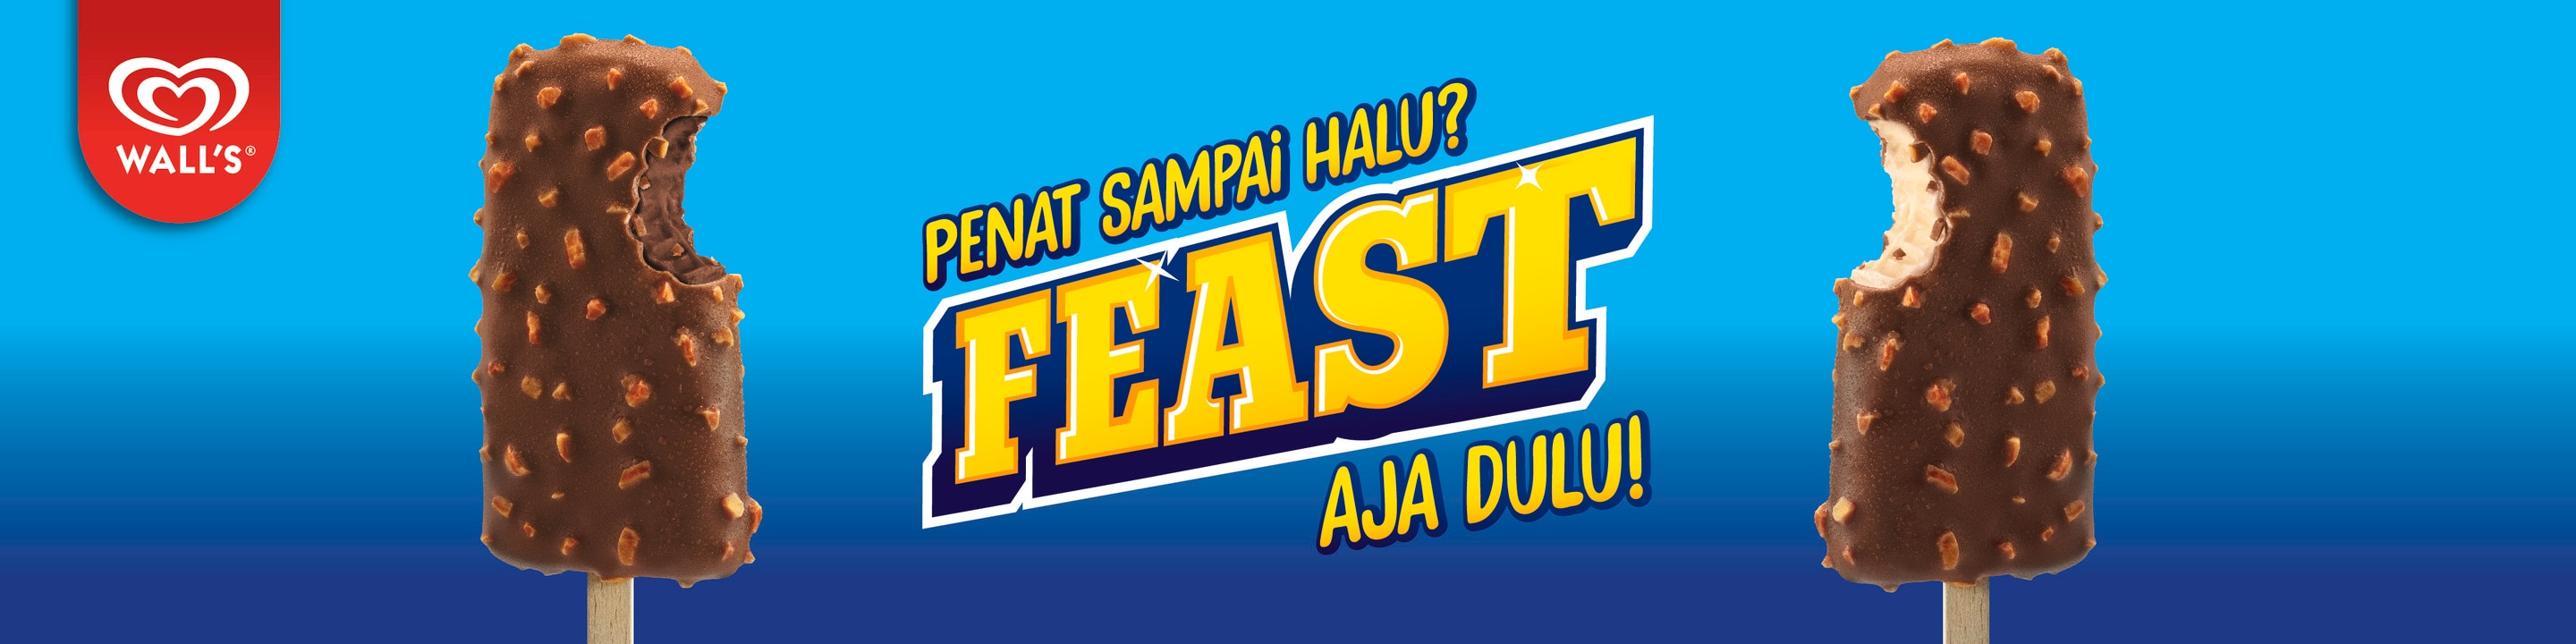 Feast Ice Creams on a blue background with text Penat Sampai Halu? Feast! Aja Dulu